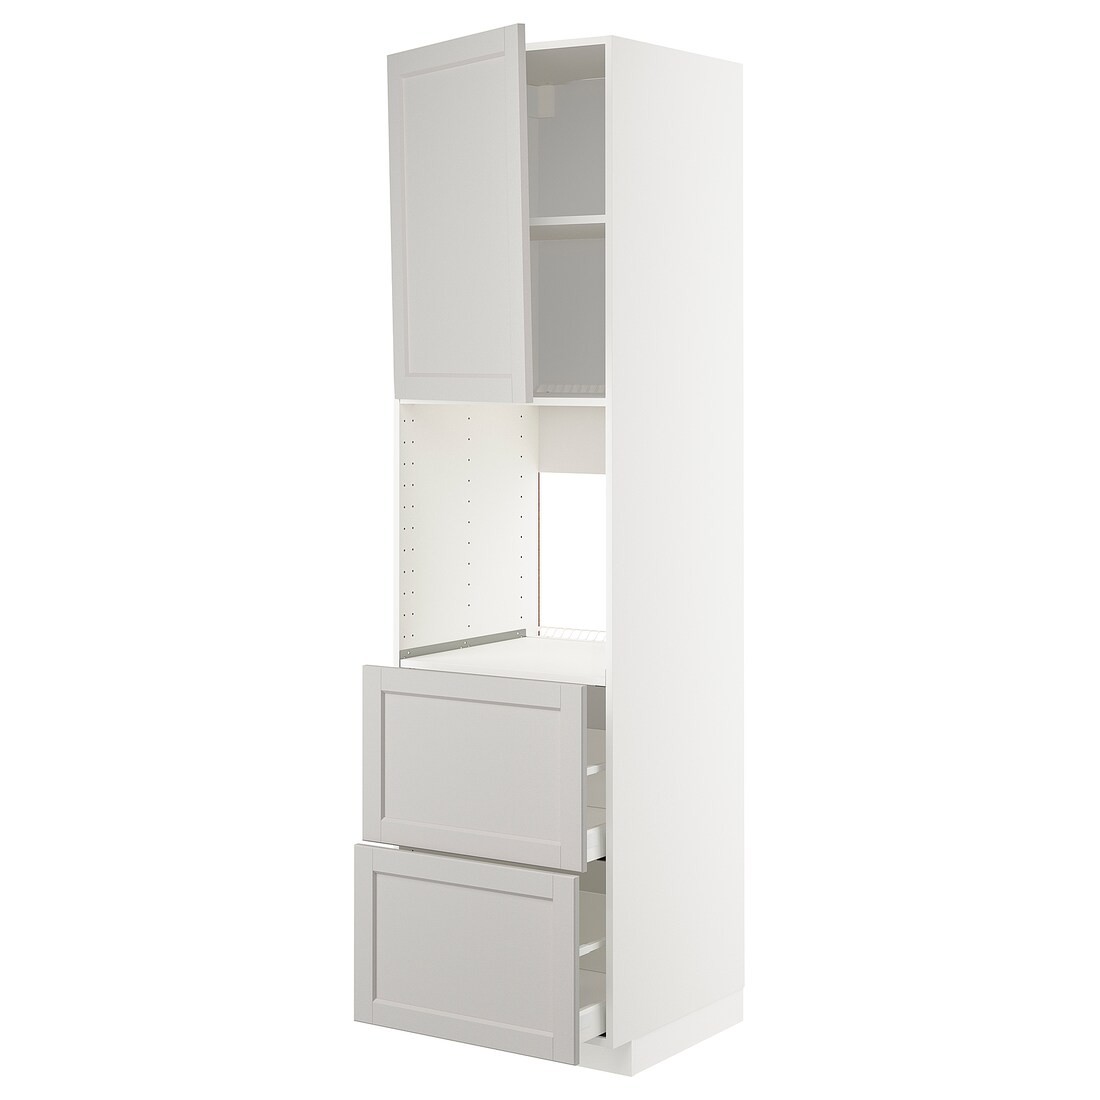 METOD МЕТОД / MAXIMERA МАКСИМЕРА Высокий шкаф для духовки с дверцей / ящиками, белый / Lerhyttan светло-серый, 60x60x220 см